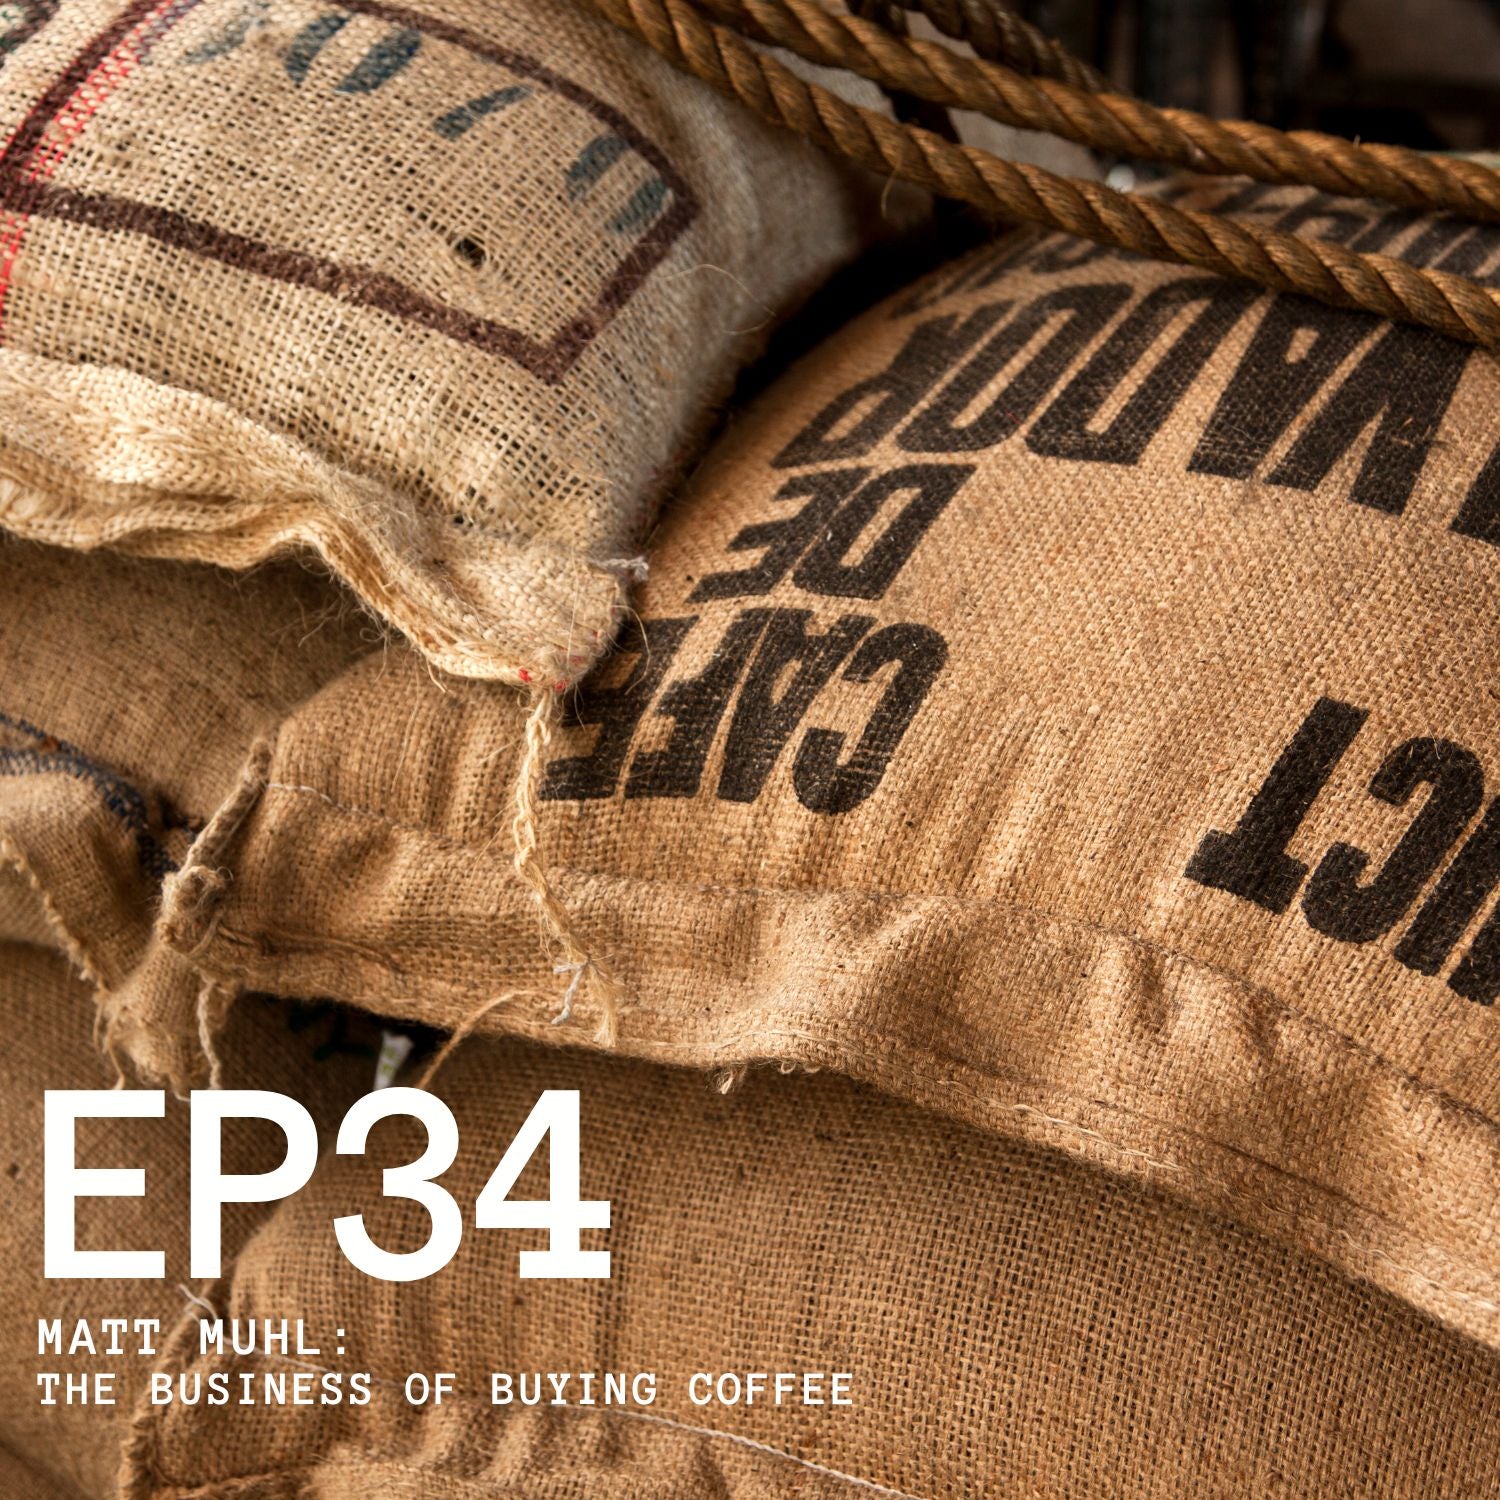 Episode 34 - Matt Muhl: The Business of Buying Coffee